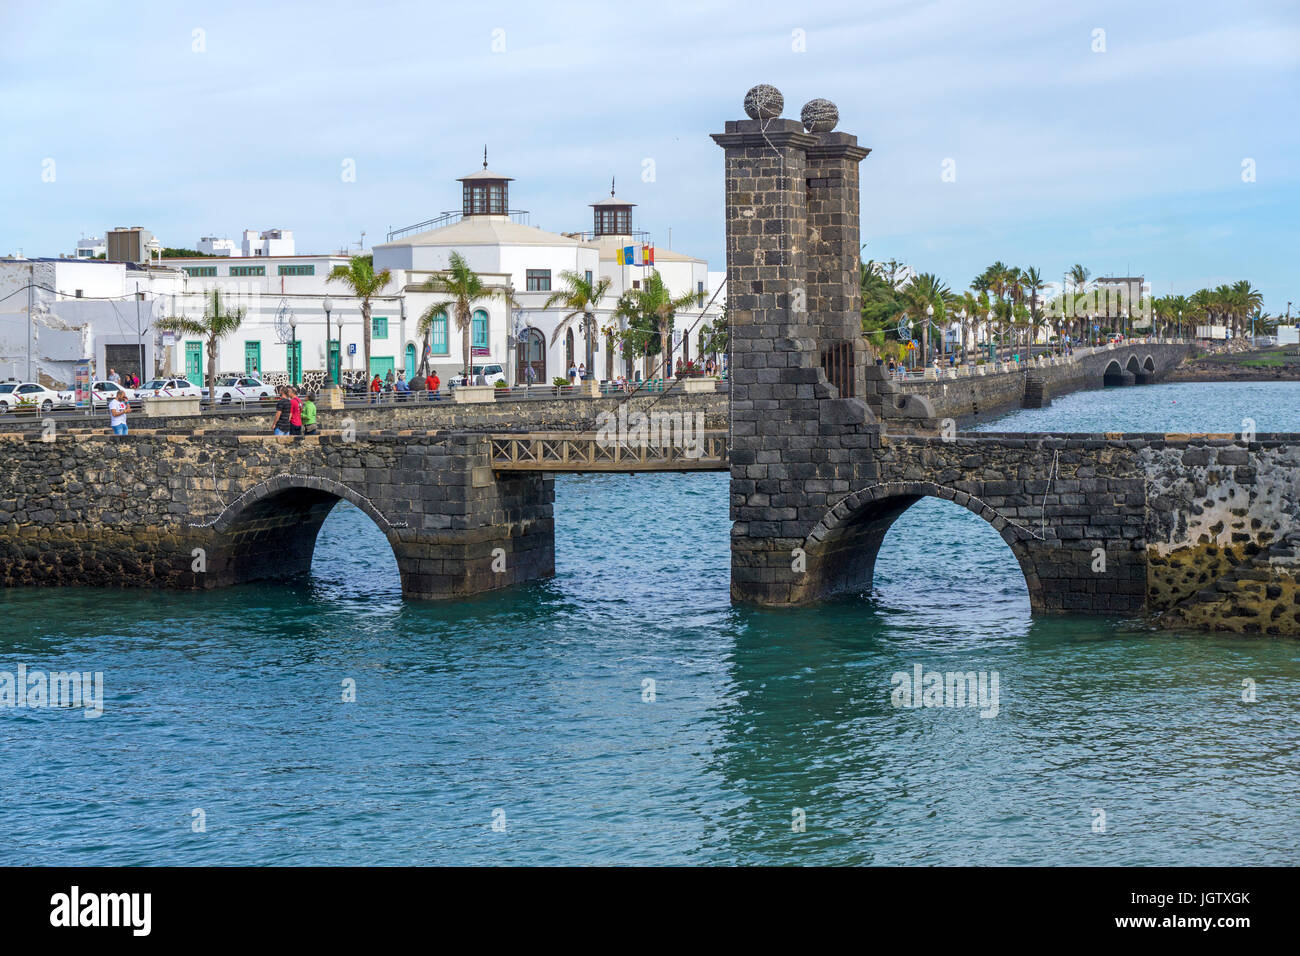 Drawbridge Puente de las Bolas (Bowl bridge), connect Arrecife with fortress Castillo de San Gabriel, Arrecife, Lanzarote, Canary islands, Europe Stock Photo